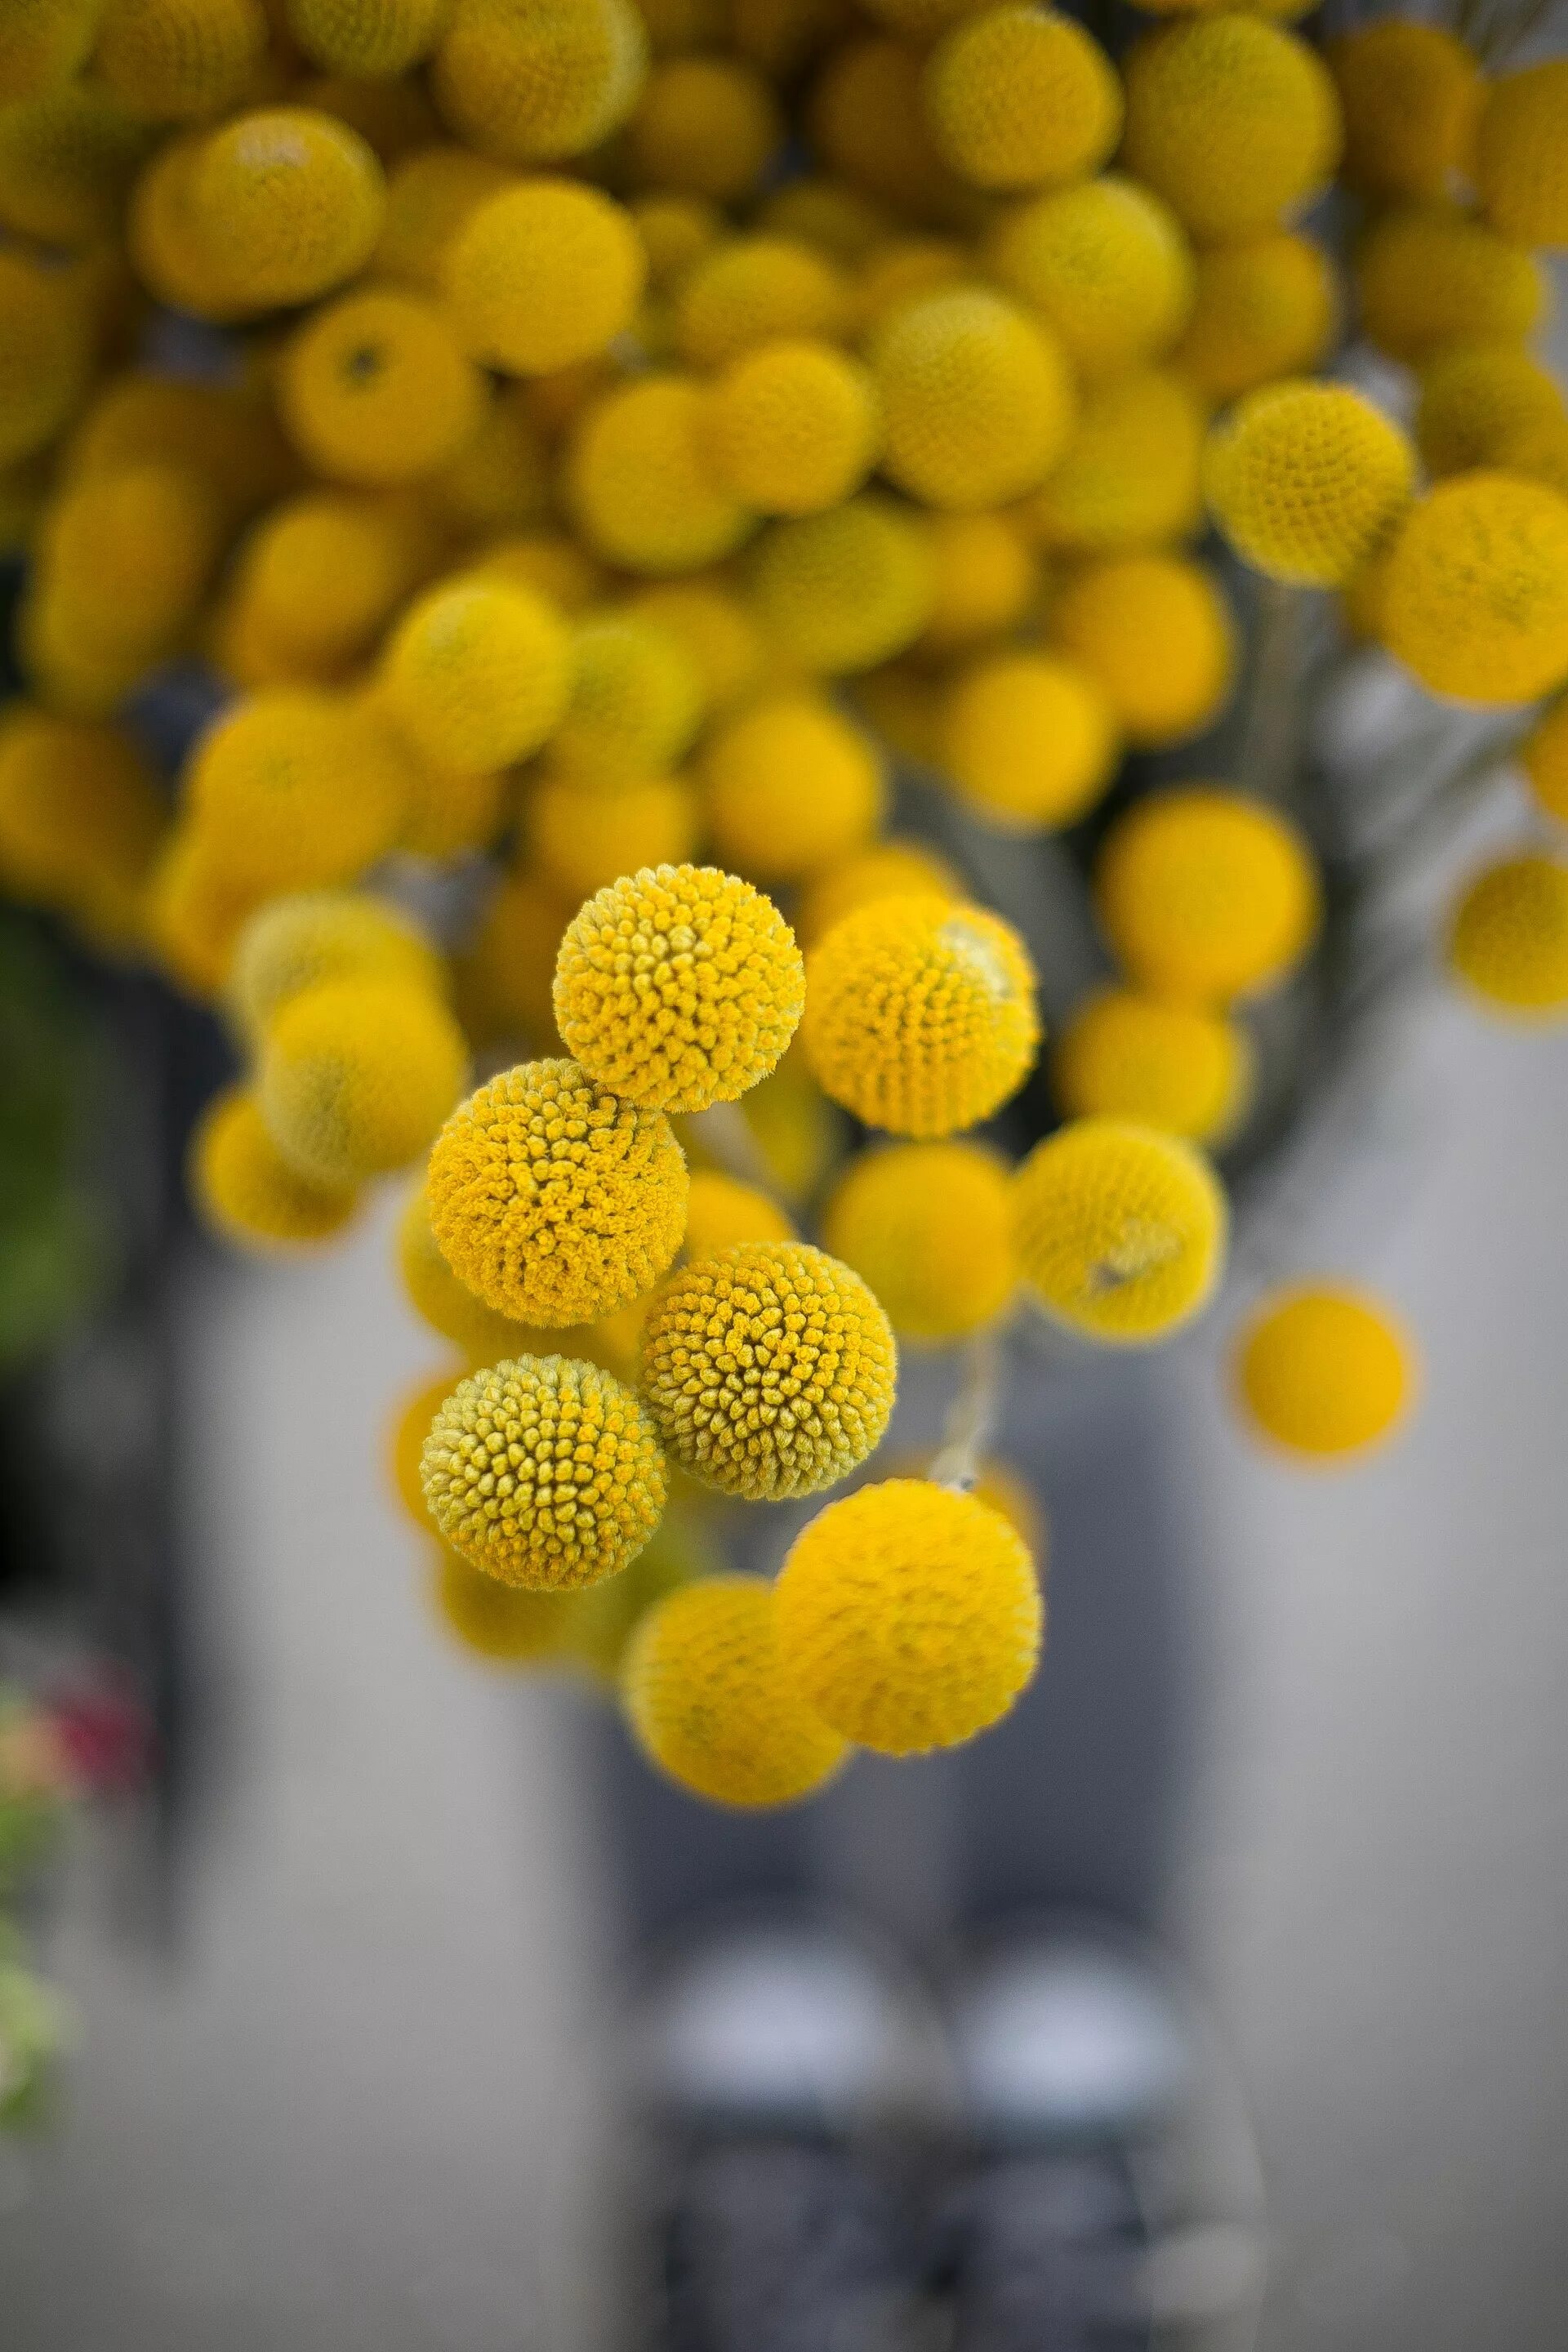 Цветок круглыми шарами. Краспедия шаровидная Билли батон. Растение Краспедия шаровидная. Растение с жёлтыми шариками. Желтые цветы круглые шарики.